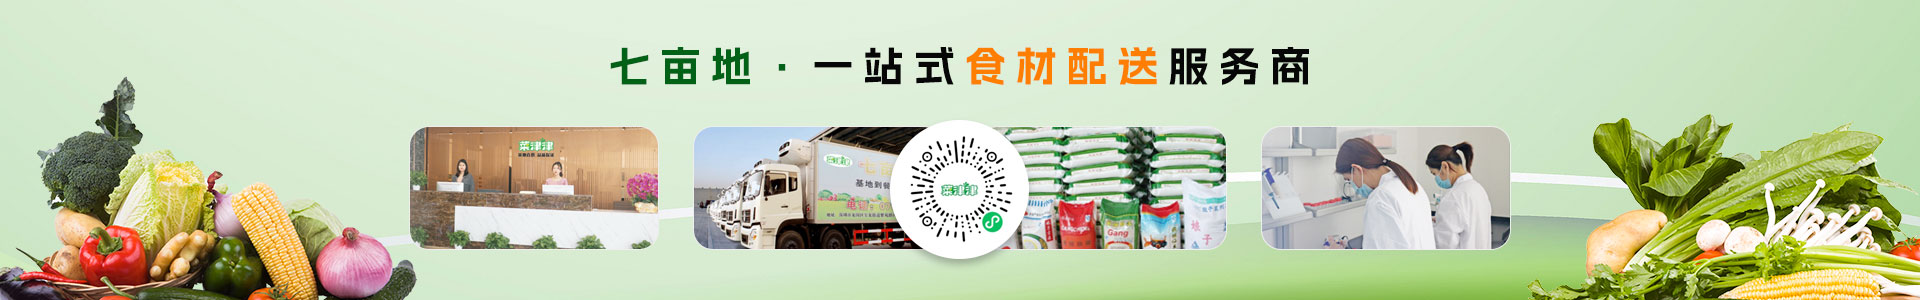 深圳市七亩地农产品实业有限公司-新鲜猪蹄配送